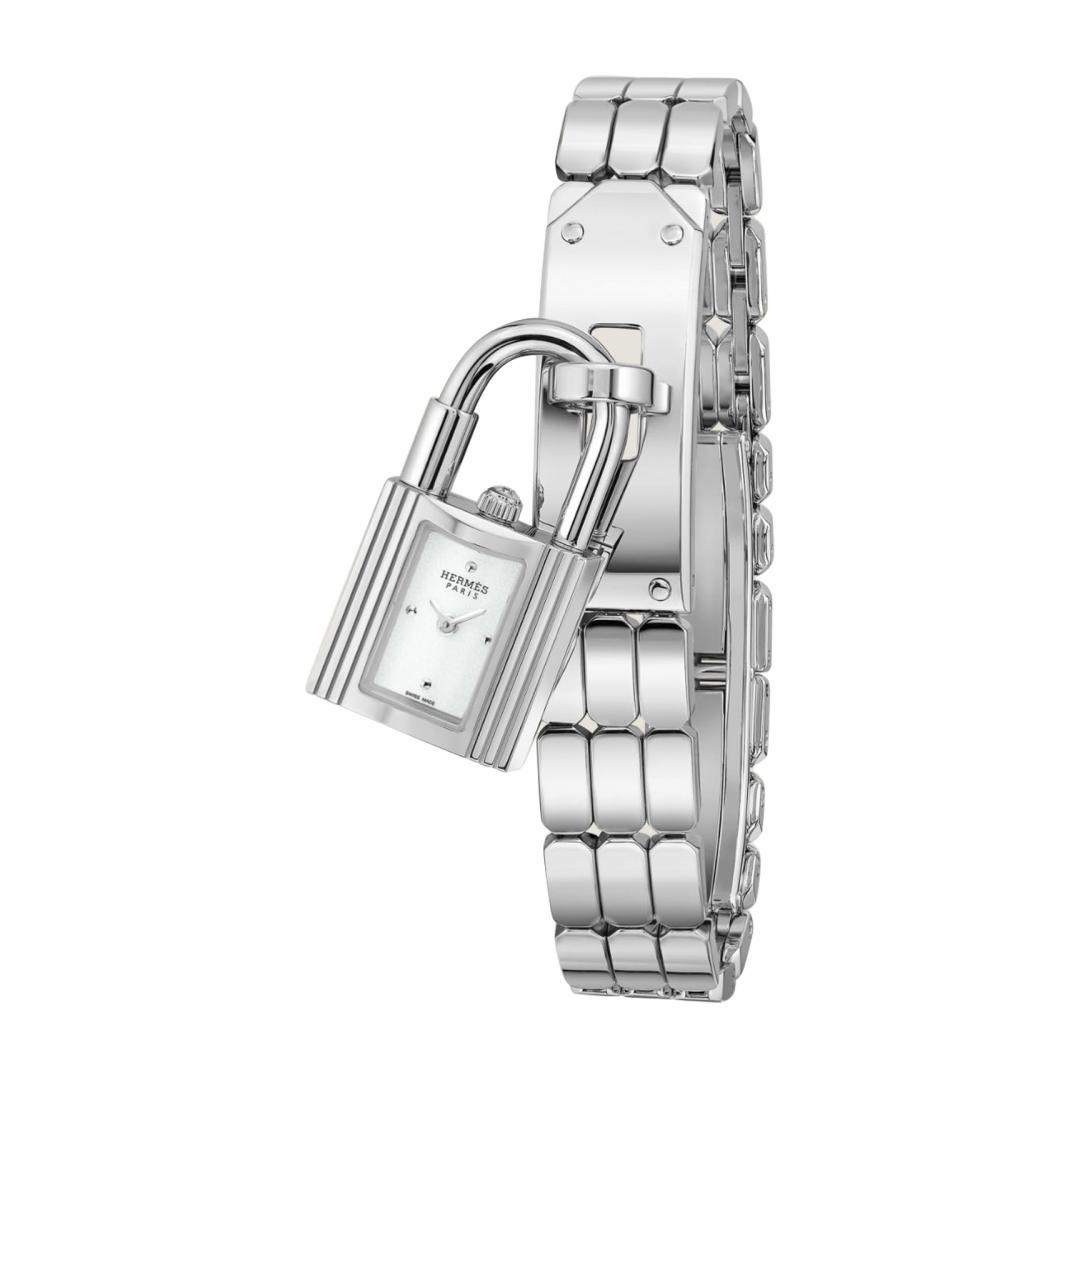 HERMES PRE-OWNED Серебряные часы, фото 1